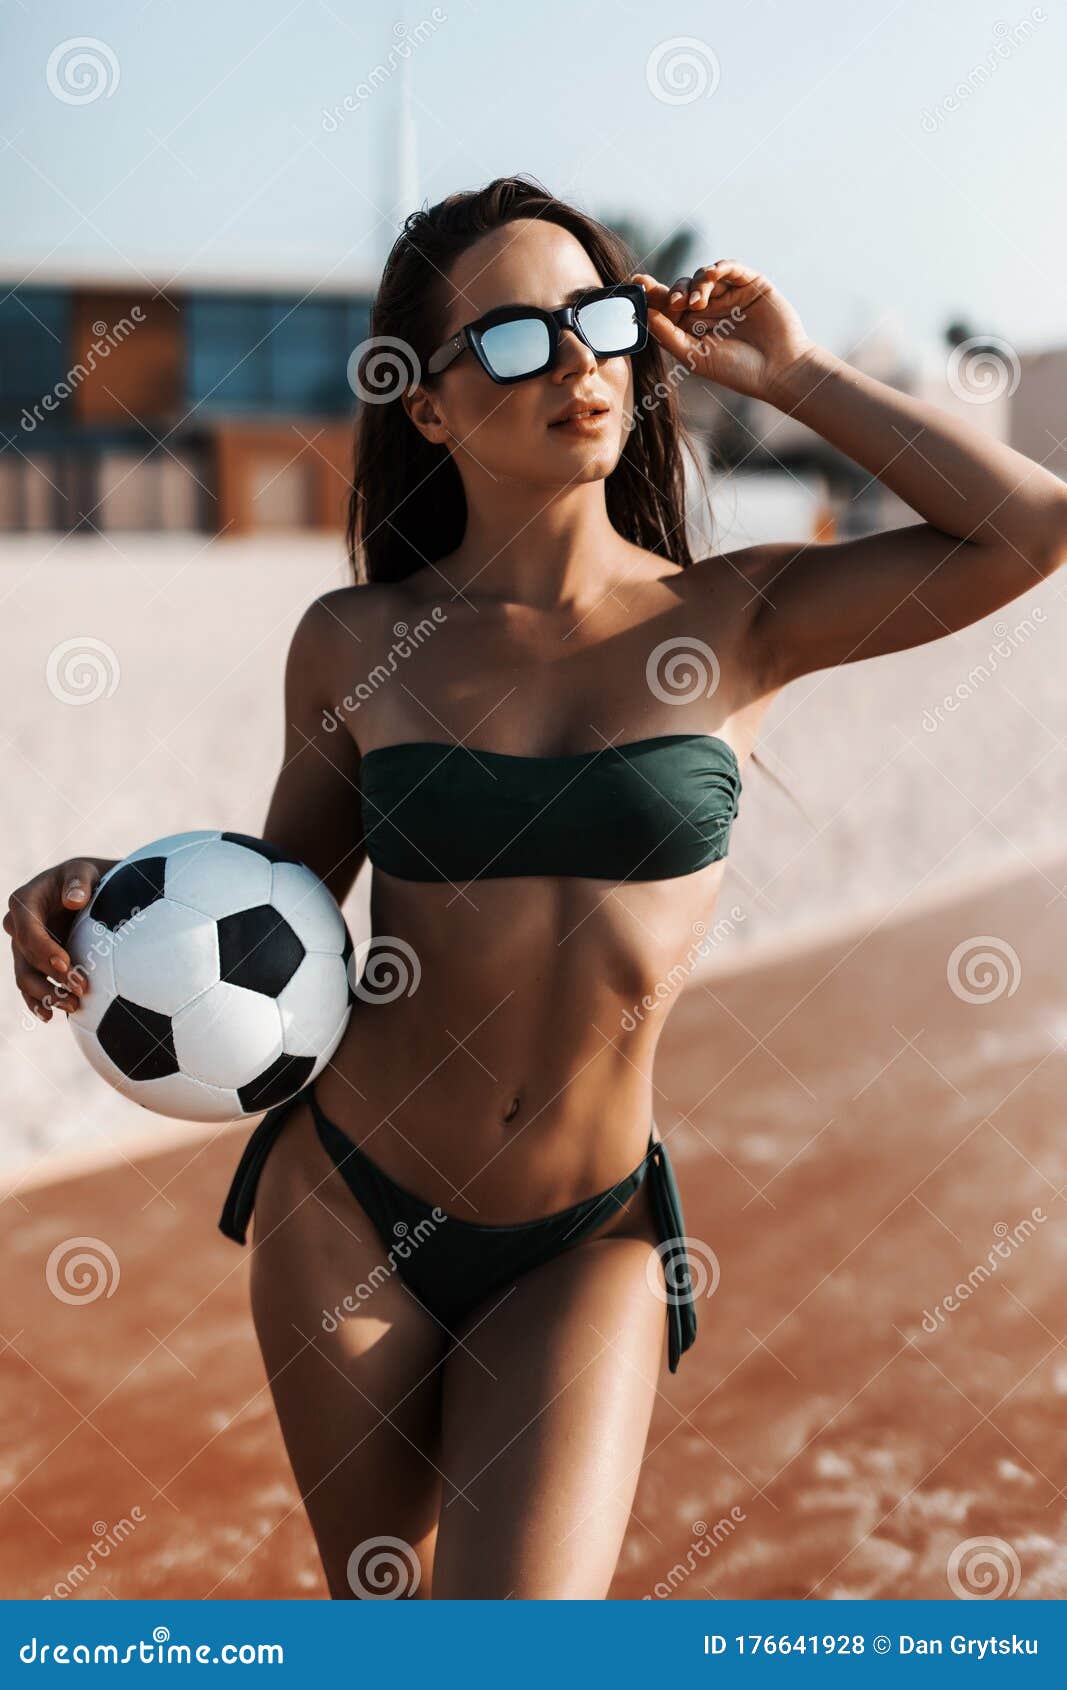 Mujer Joven En Forma Usa Gafas De Sol En Bikini Verde Con Juego De Fútbol  En La Playa Foto de archivo - Imagen de lindo, hembra: 176641928